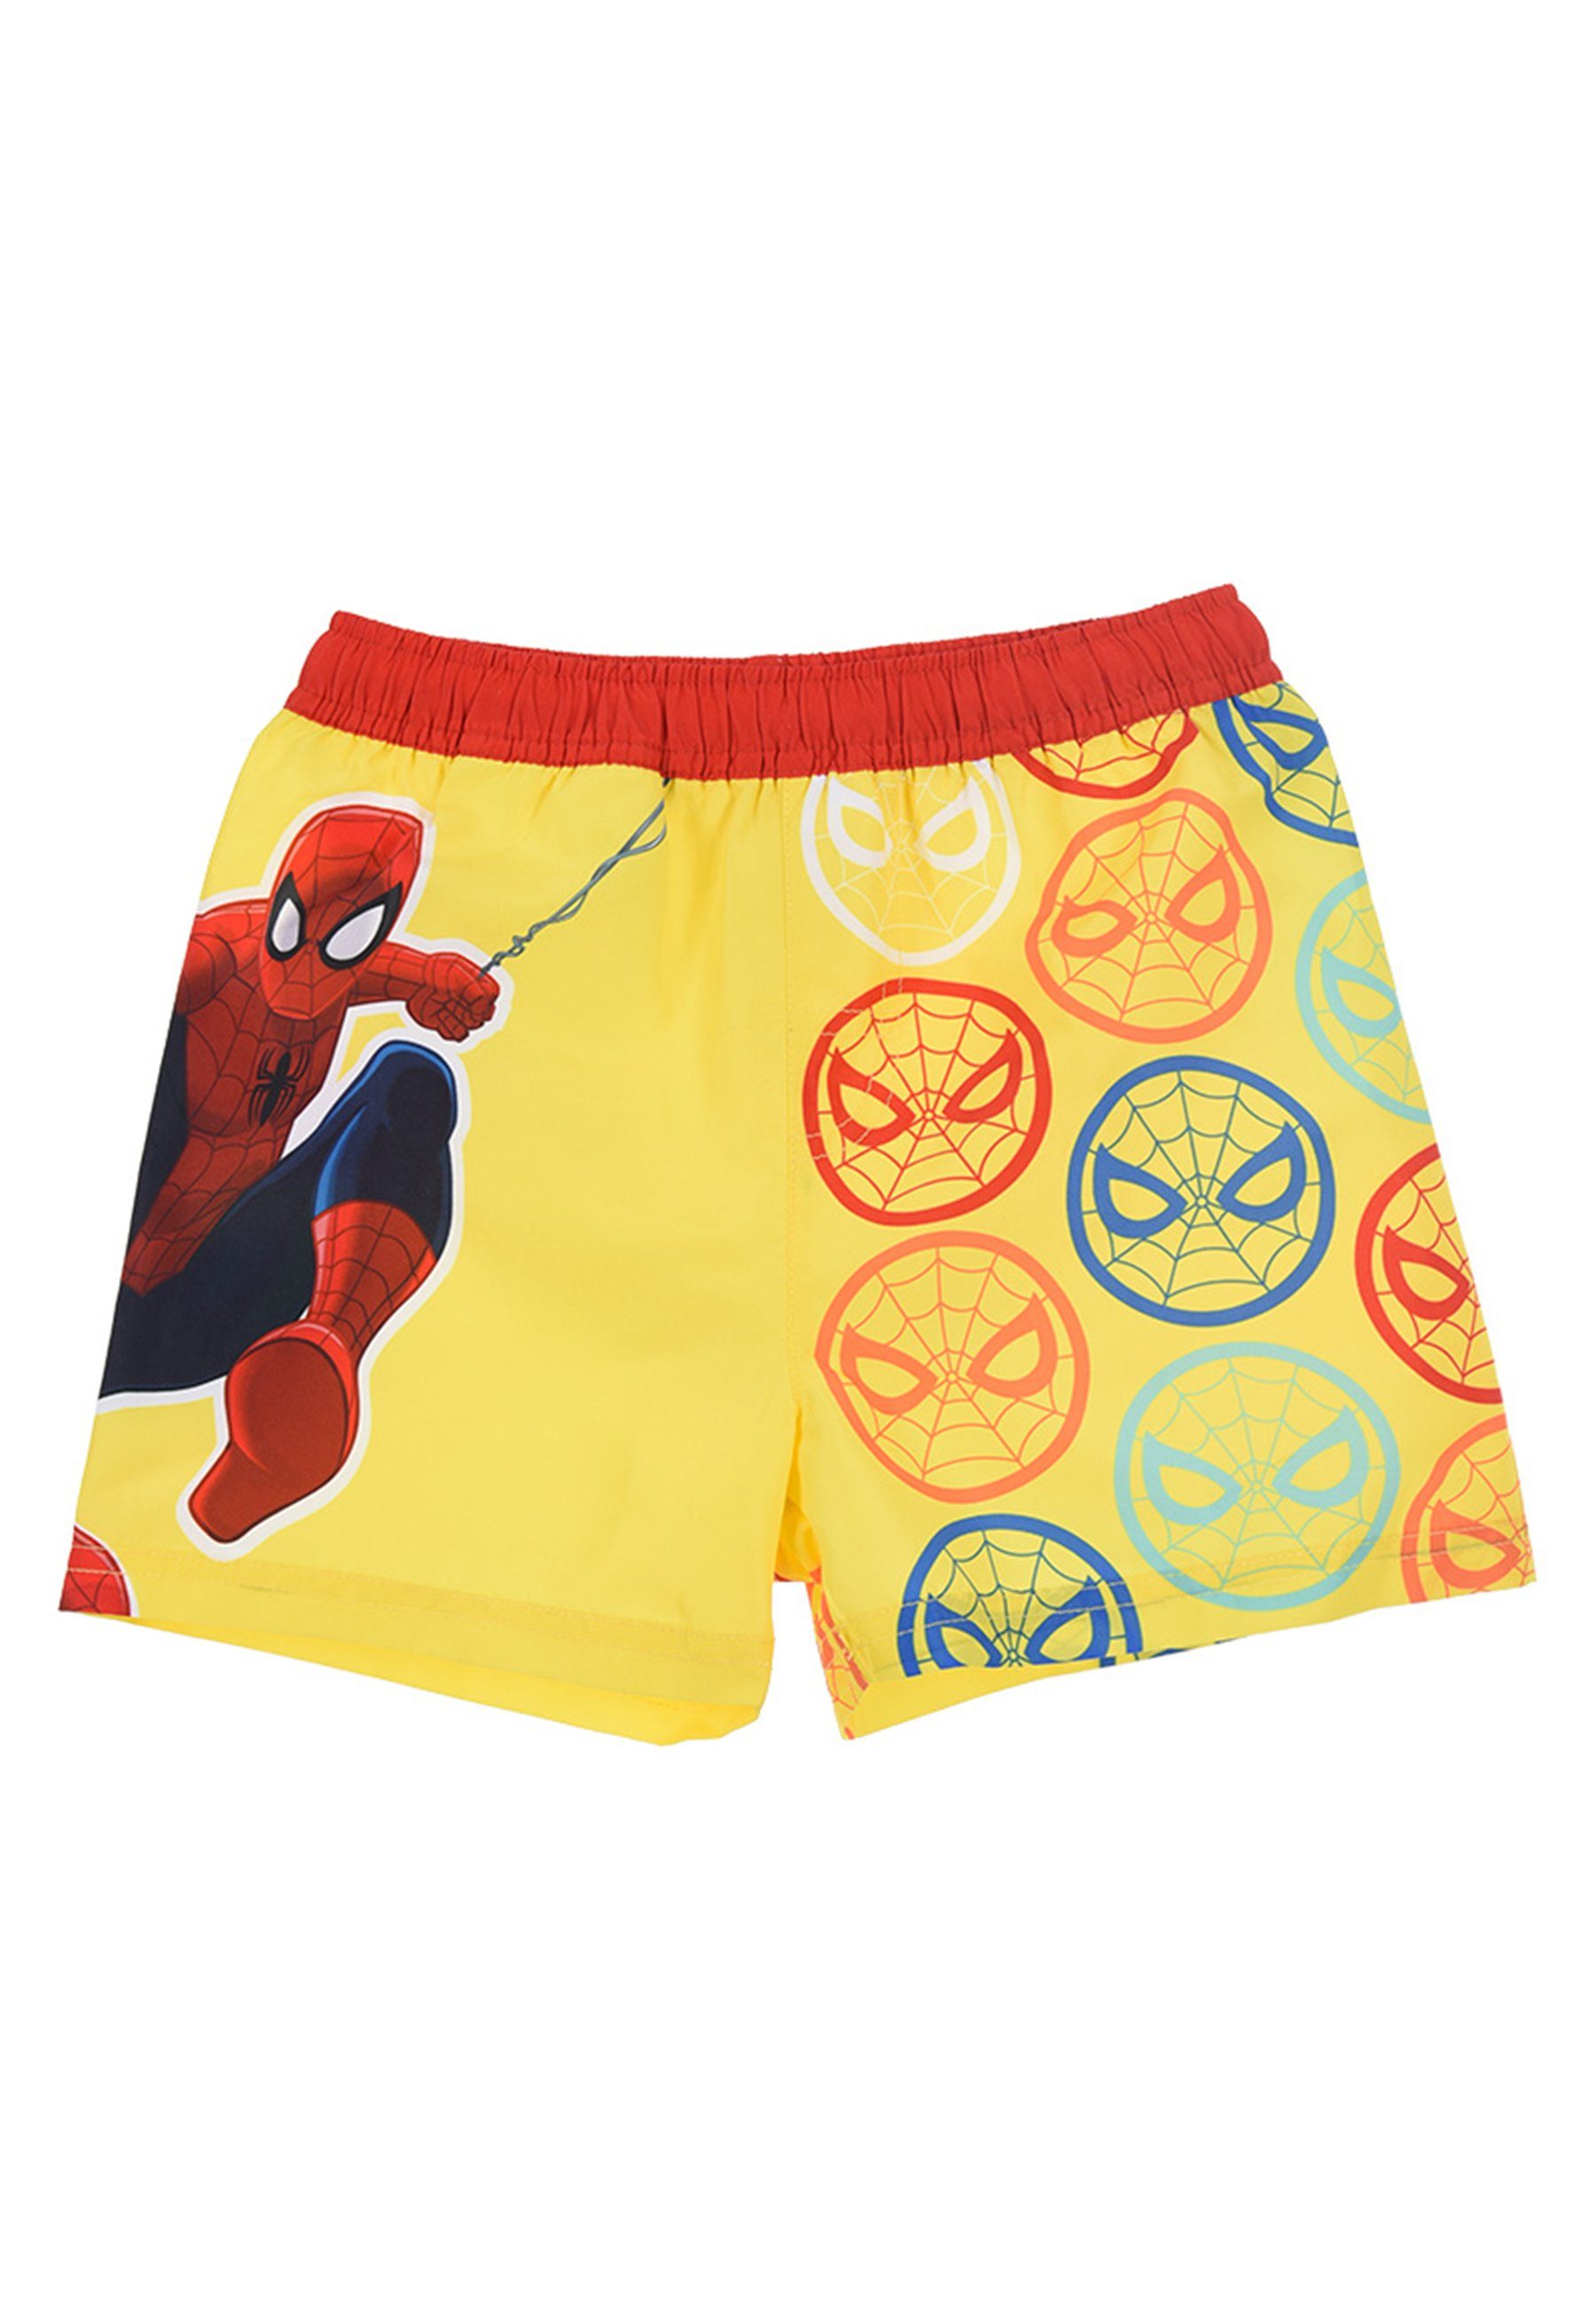 Spiderman Badeshorts Marvel Jungen Kinder Badehose Bermuda-Shorts Badepants Gelb